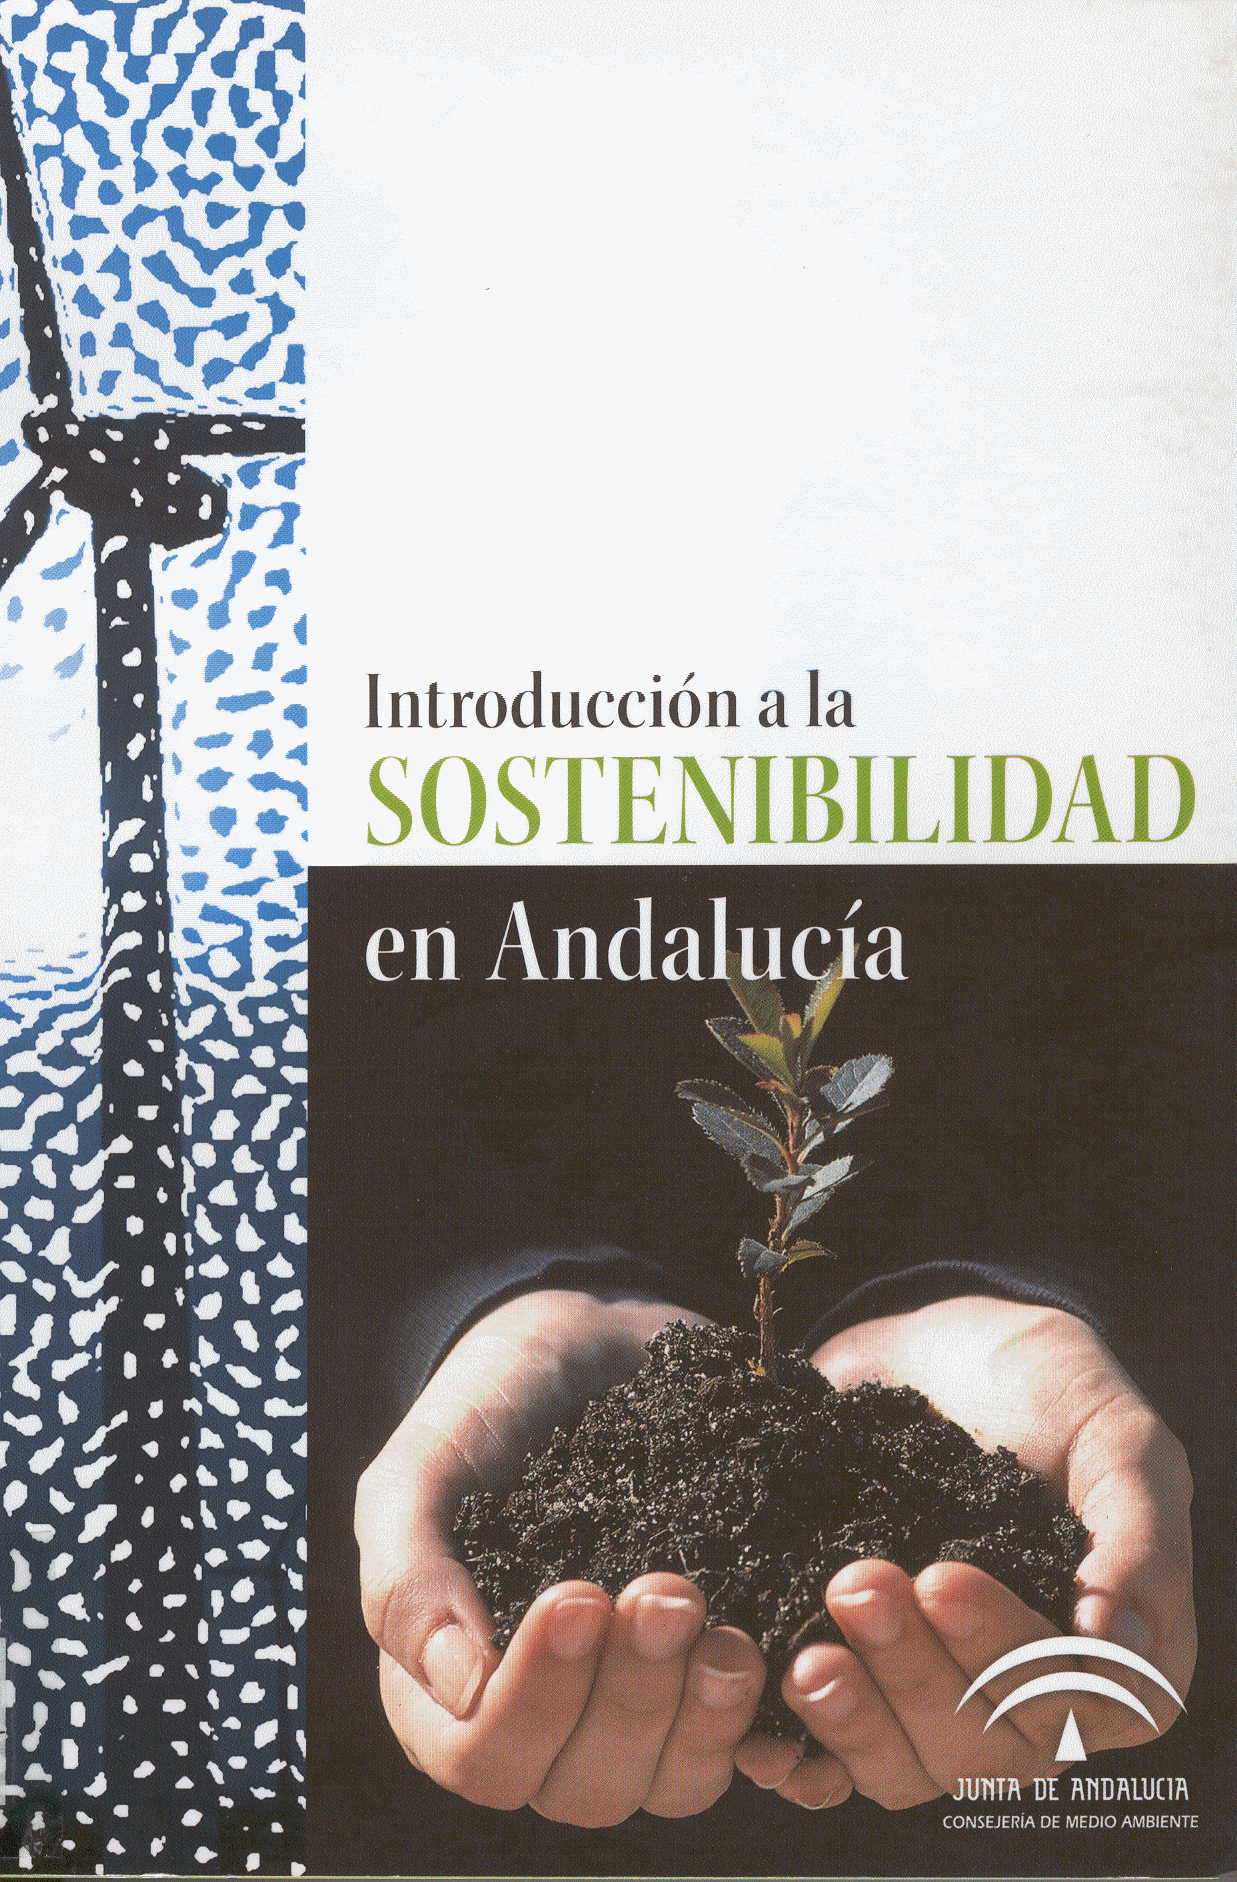 1337163396Introduccion_sostenibilidad_andalucia.jpg